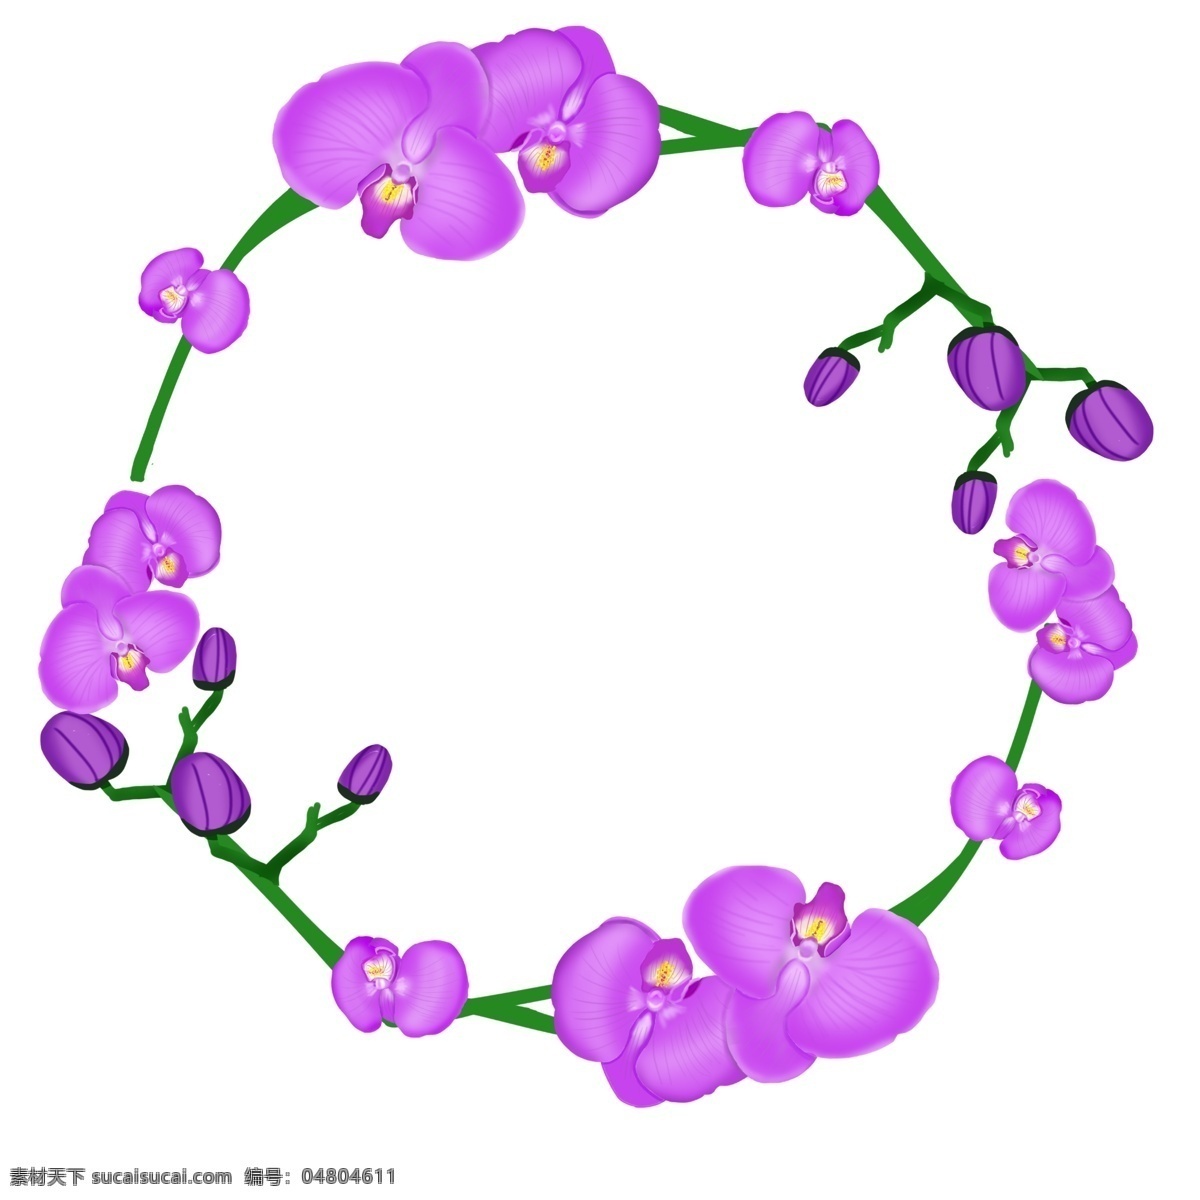 紫色 蝴蝶结 花环 插图 蝴蝶结花环 花朵 花儿